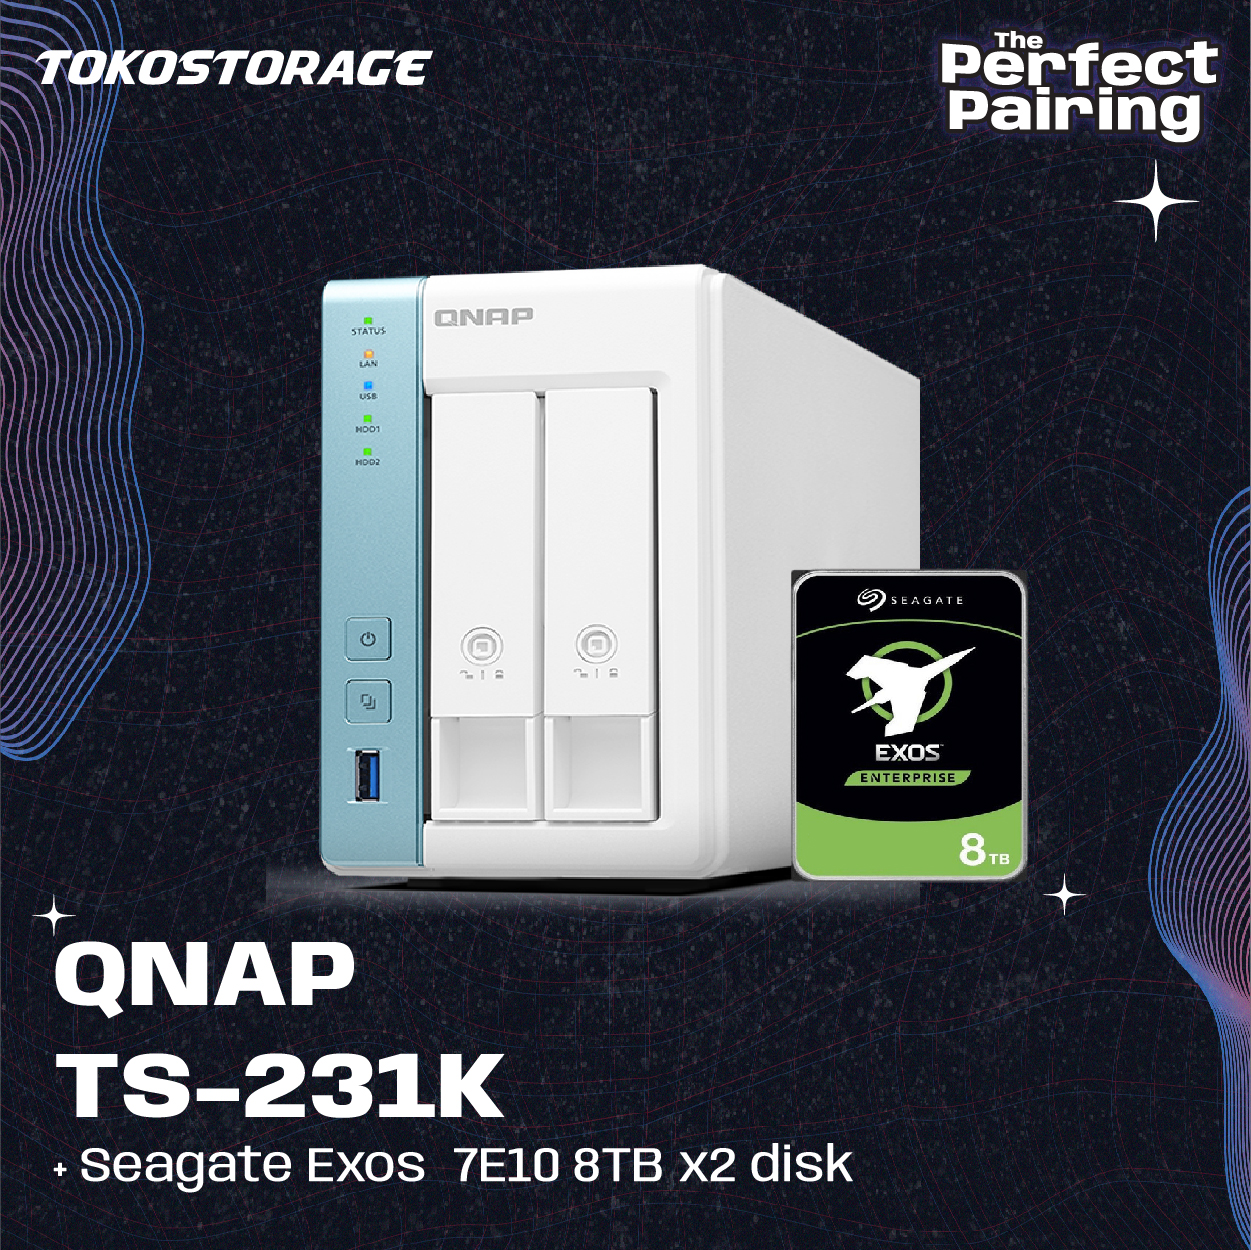 QNAP TS-231K dan HDD Seagate EXOS 8TB - 2 x 8TB